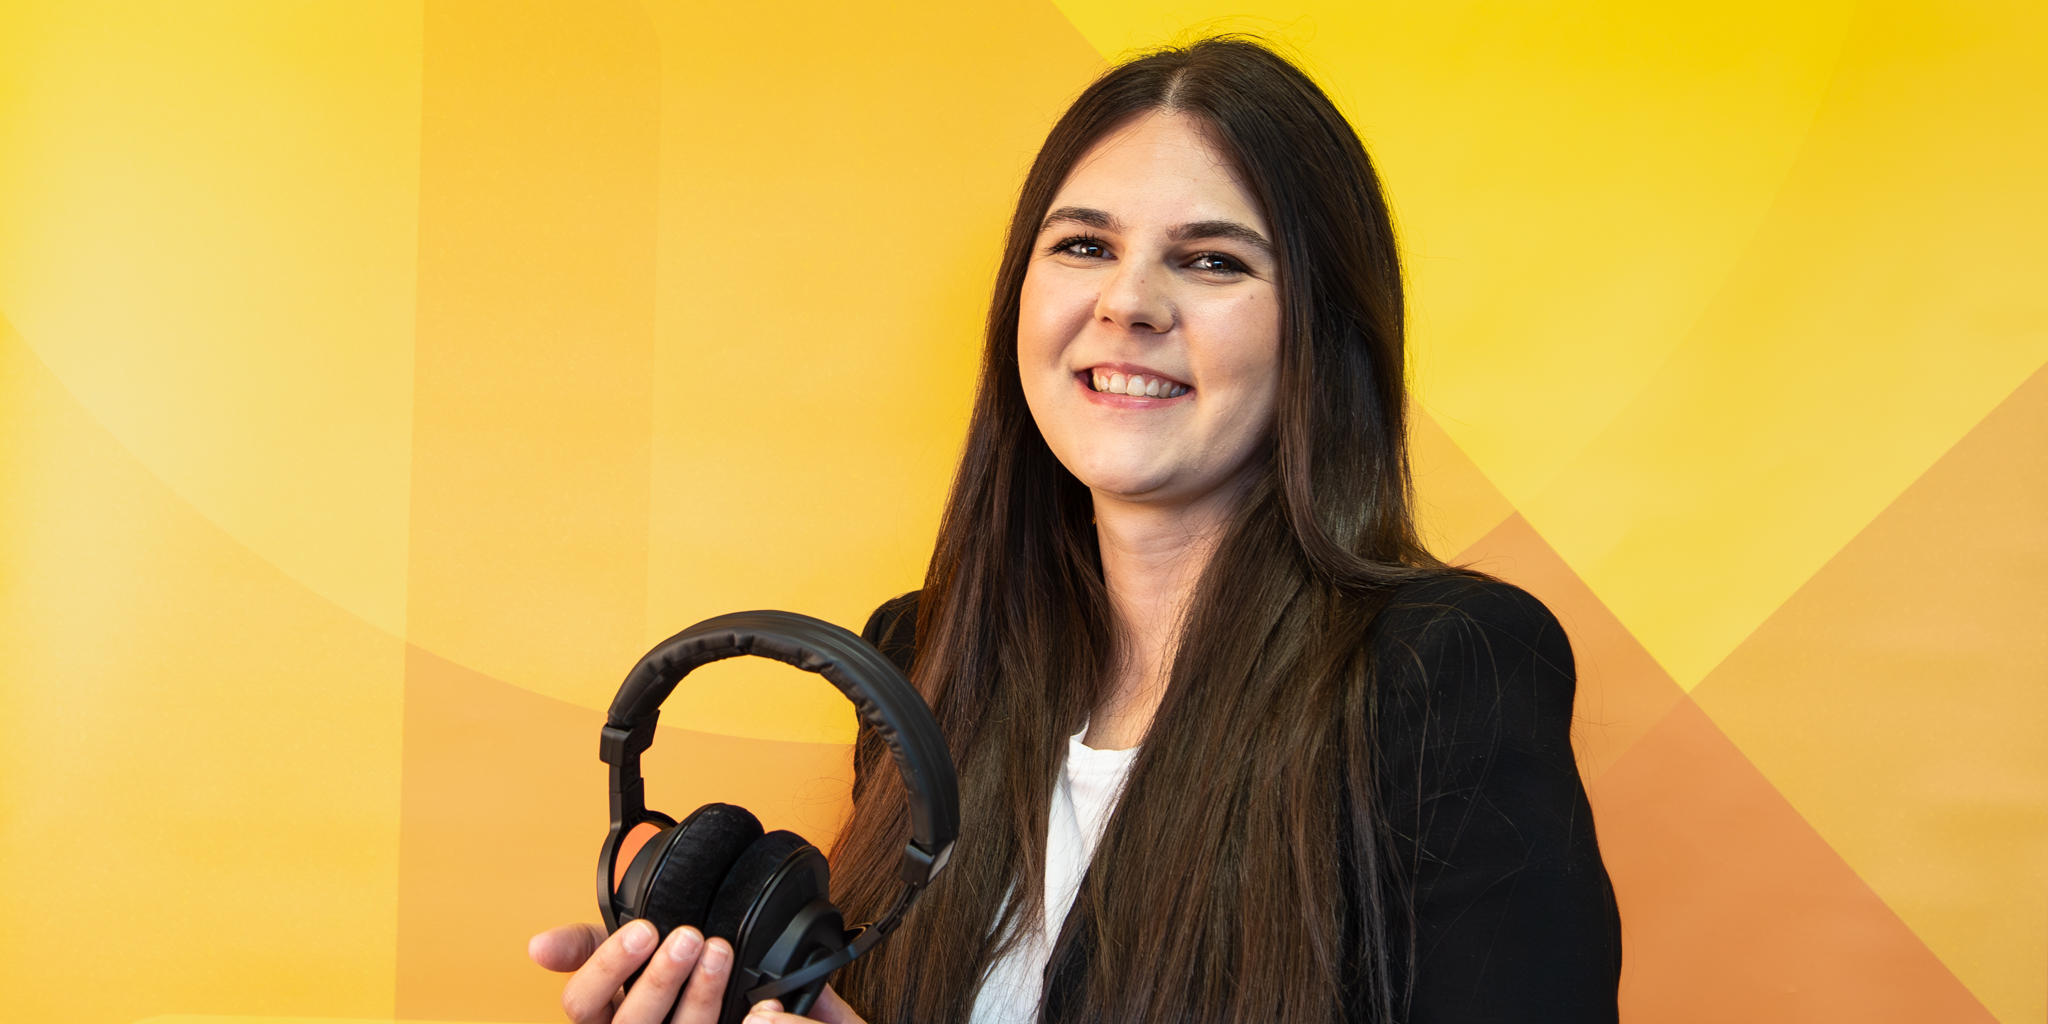 Matea Radoš steht mit Podcast-Kopfhörern vor einem gelben Hintergrund.